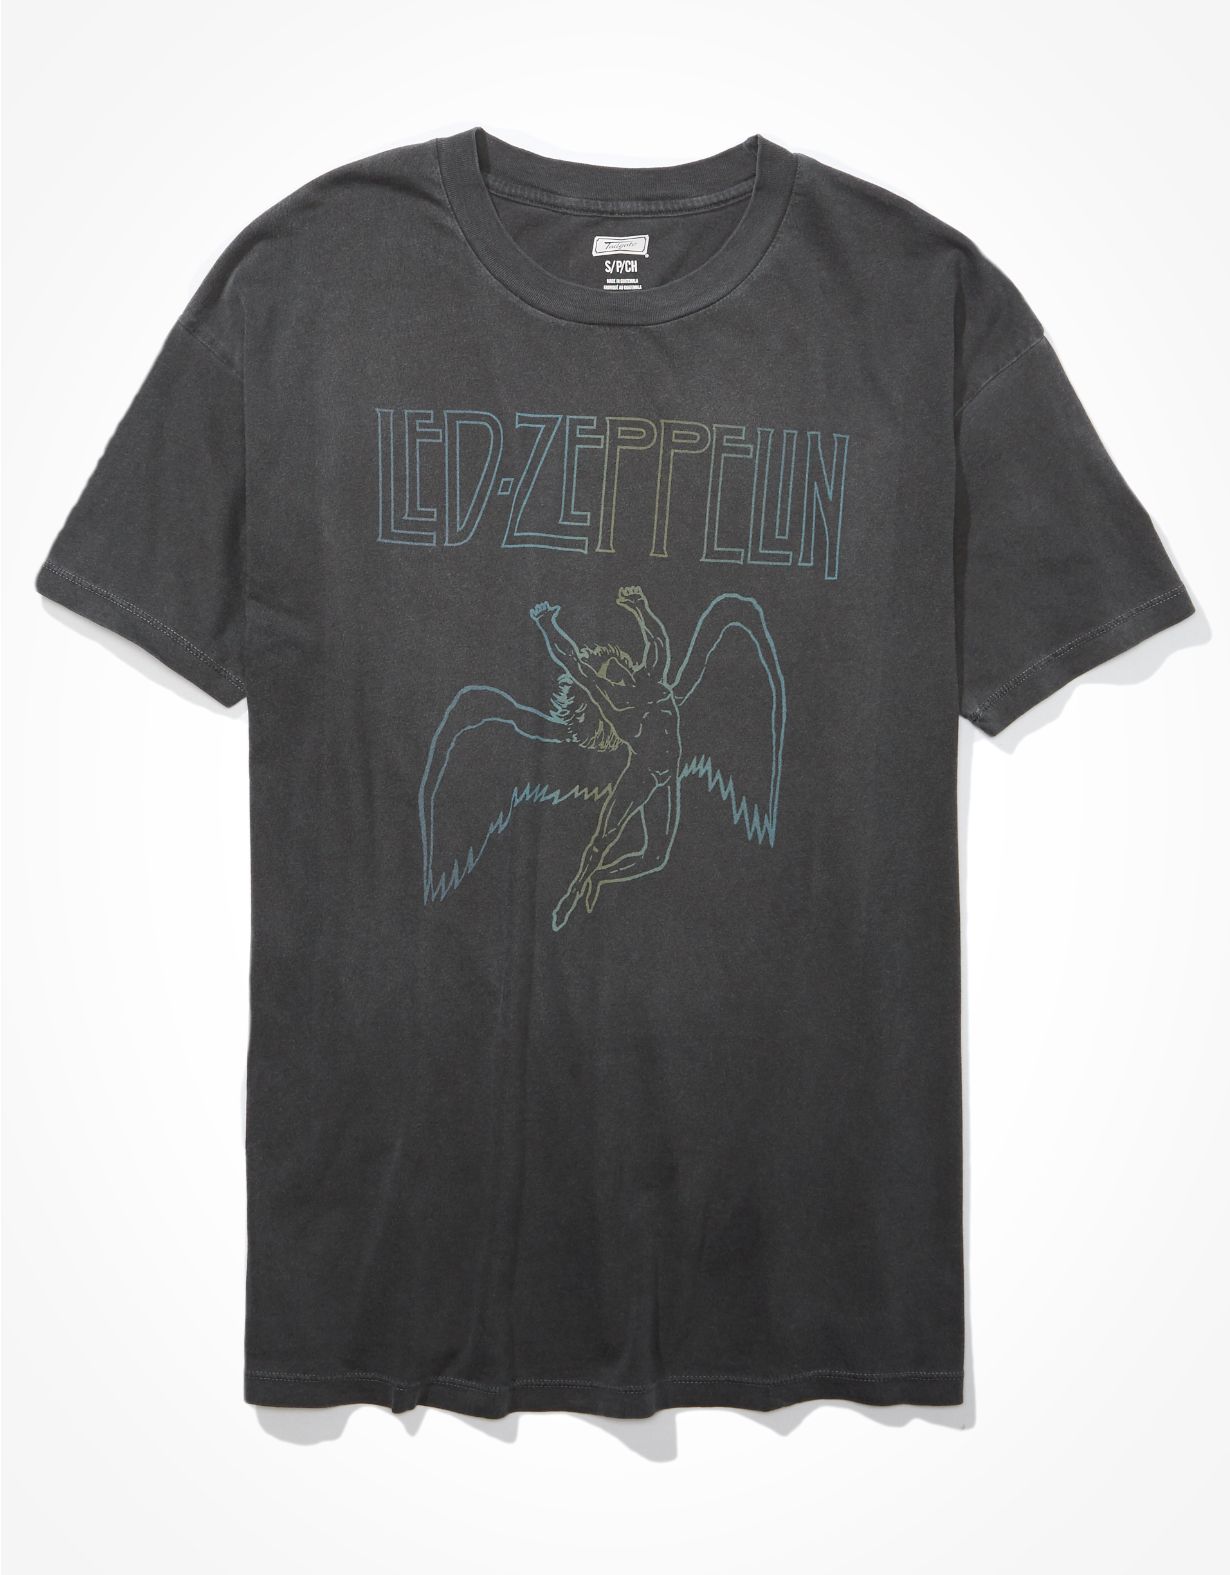 Tailgate Women's Led Zeppelin Oversized Graphic T-Shirt